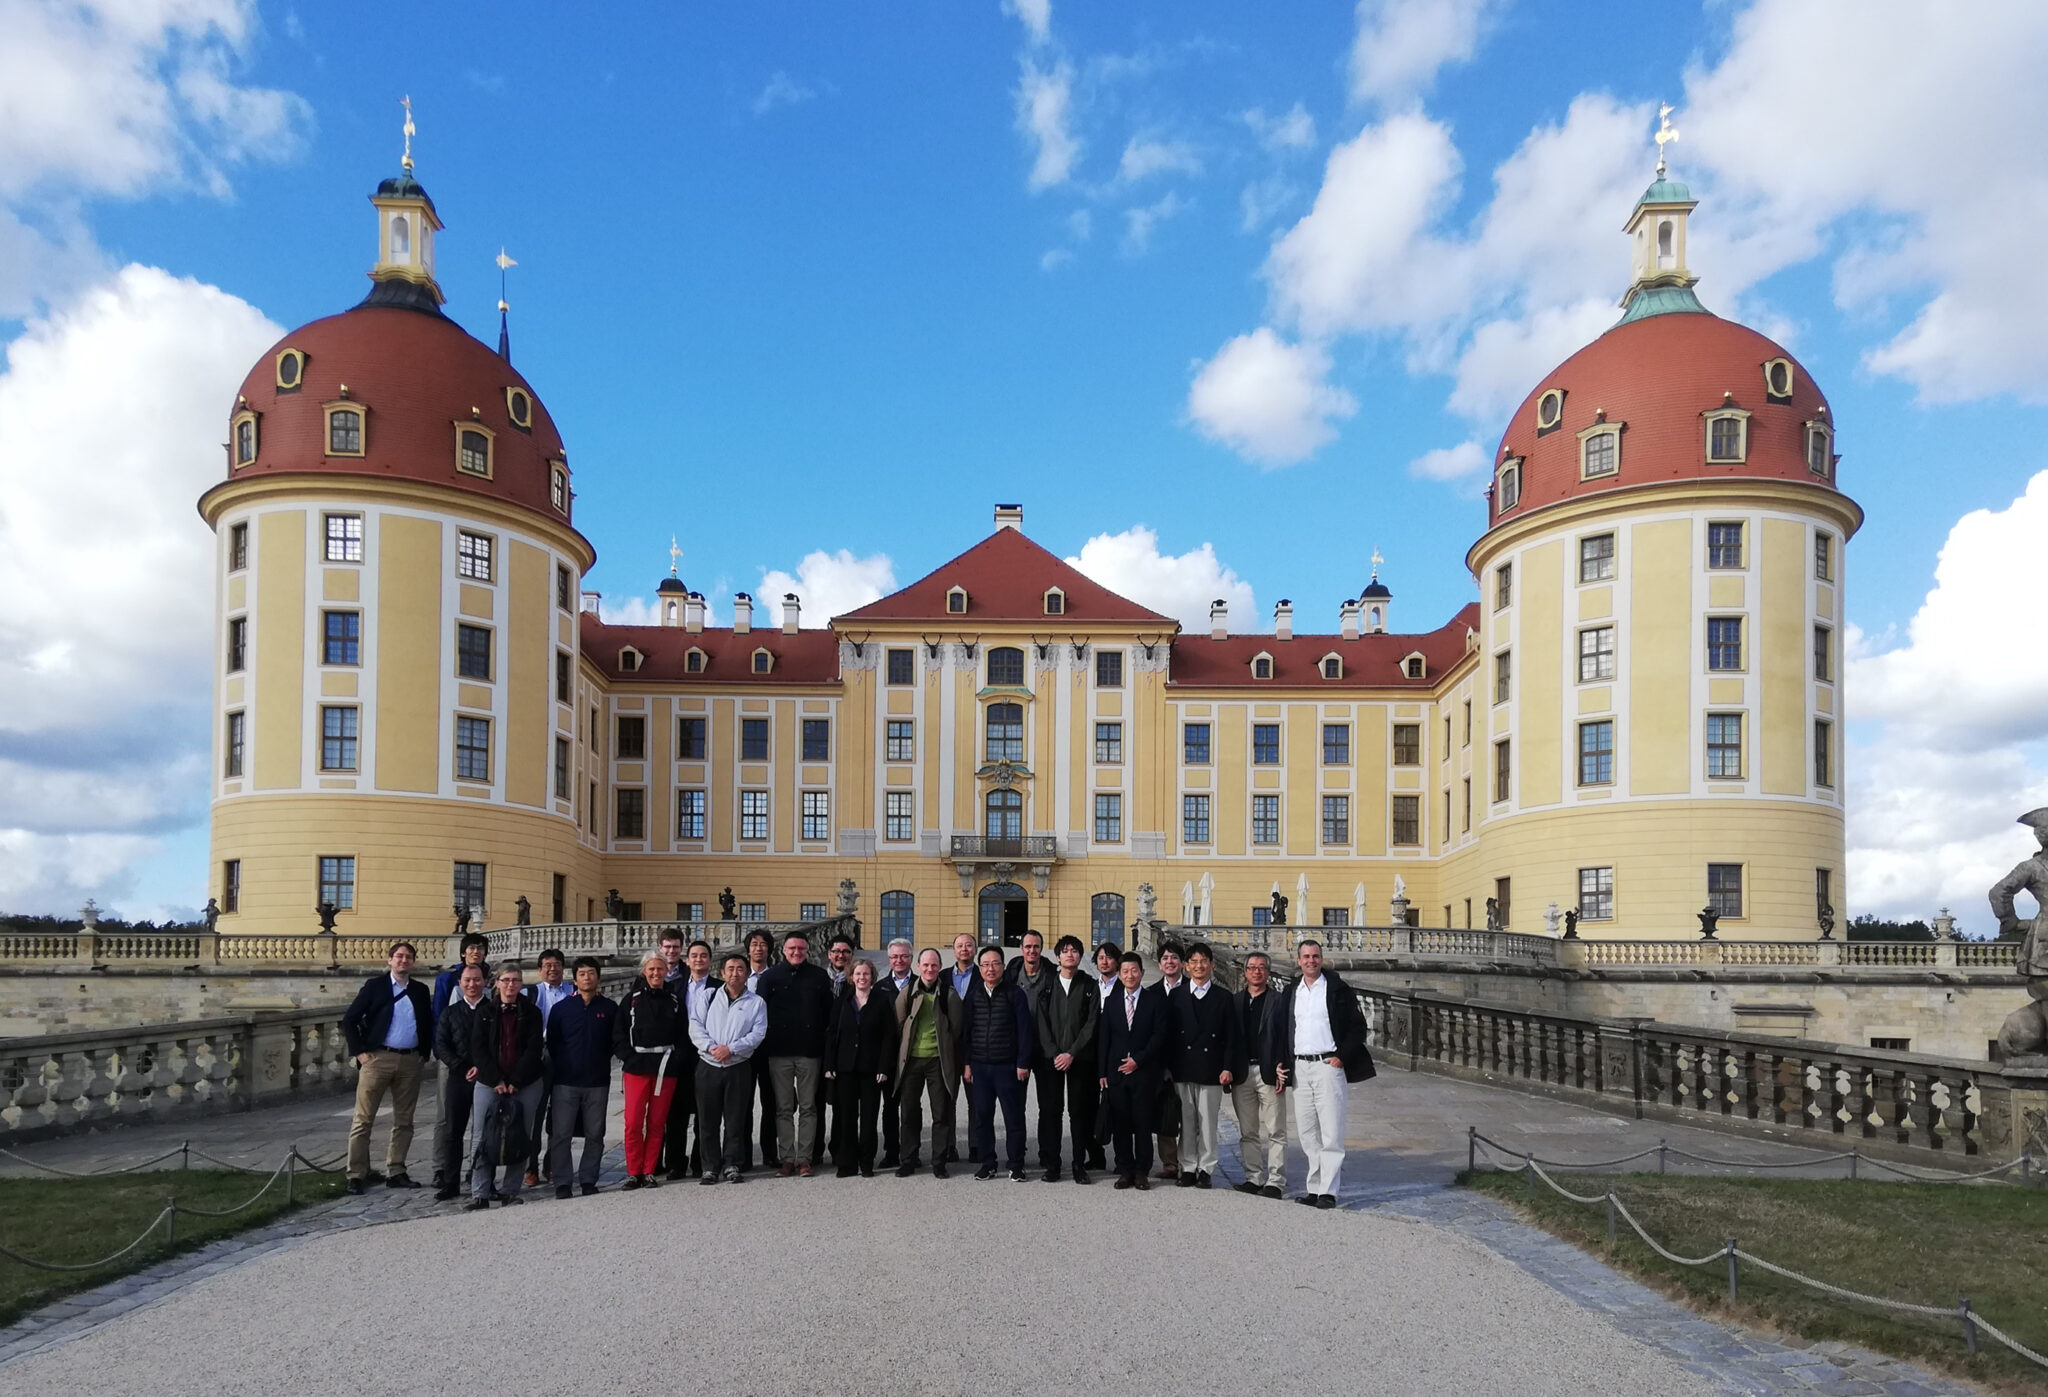 Besichtigung des Jagdschlosses Moritzburg zusammen mit japanischen Partnern